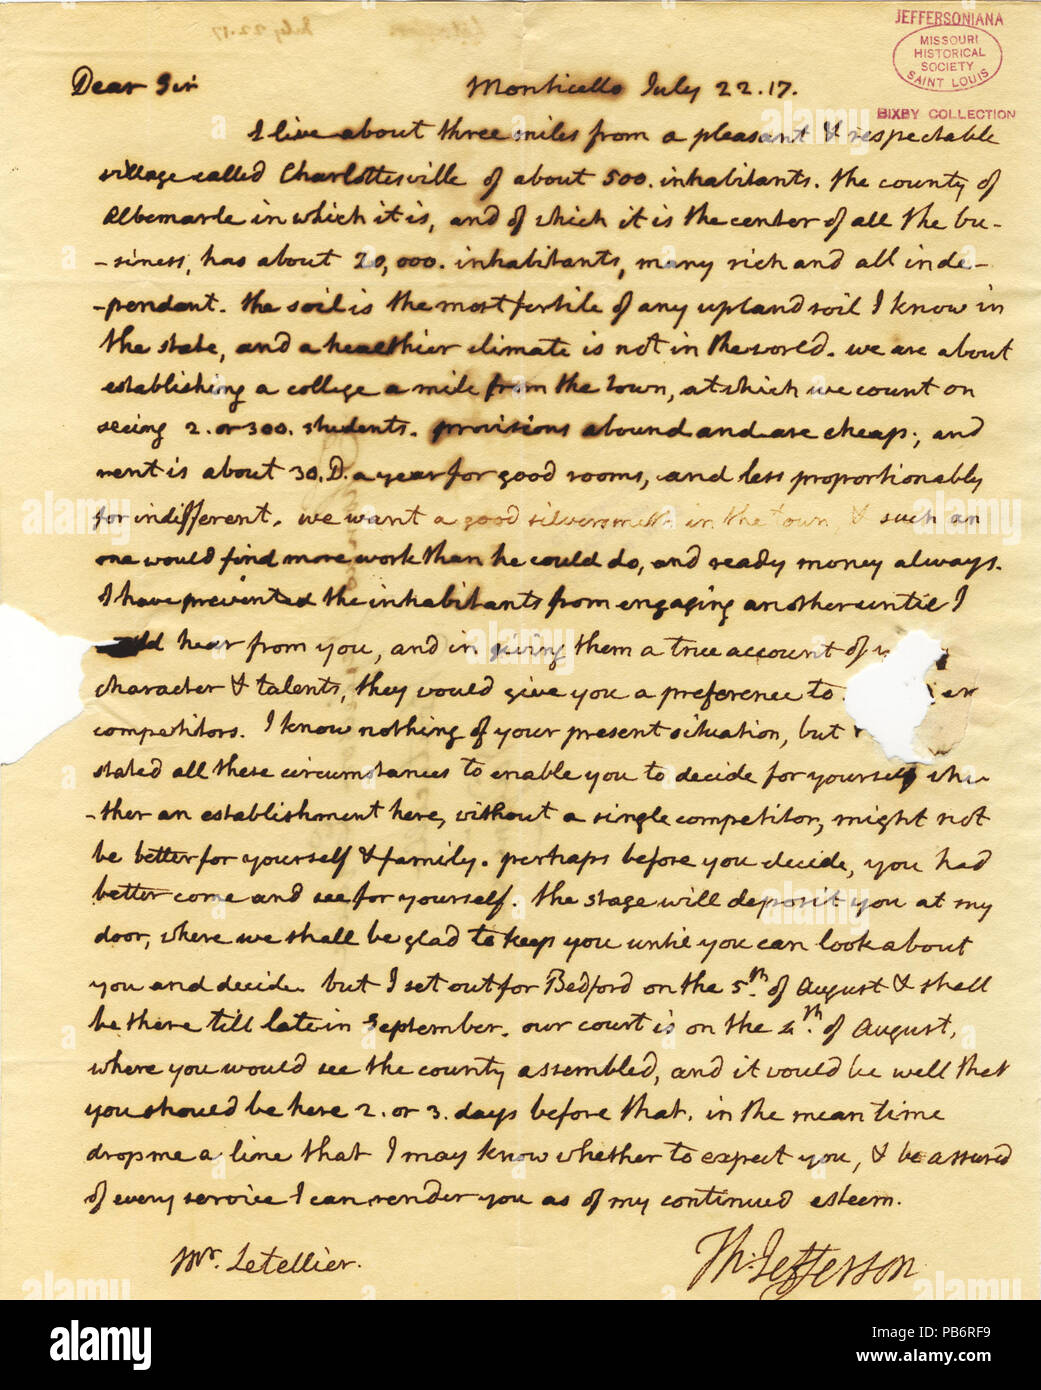 913 unterzeichneten Brief von Thomas Jefferson, Monticello, John Letellier, 22. Juli 1817 Stockfoto